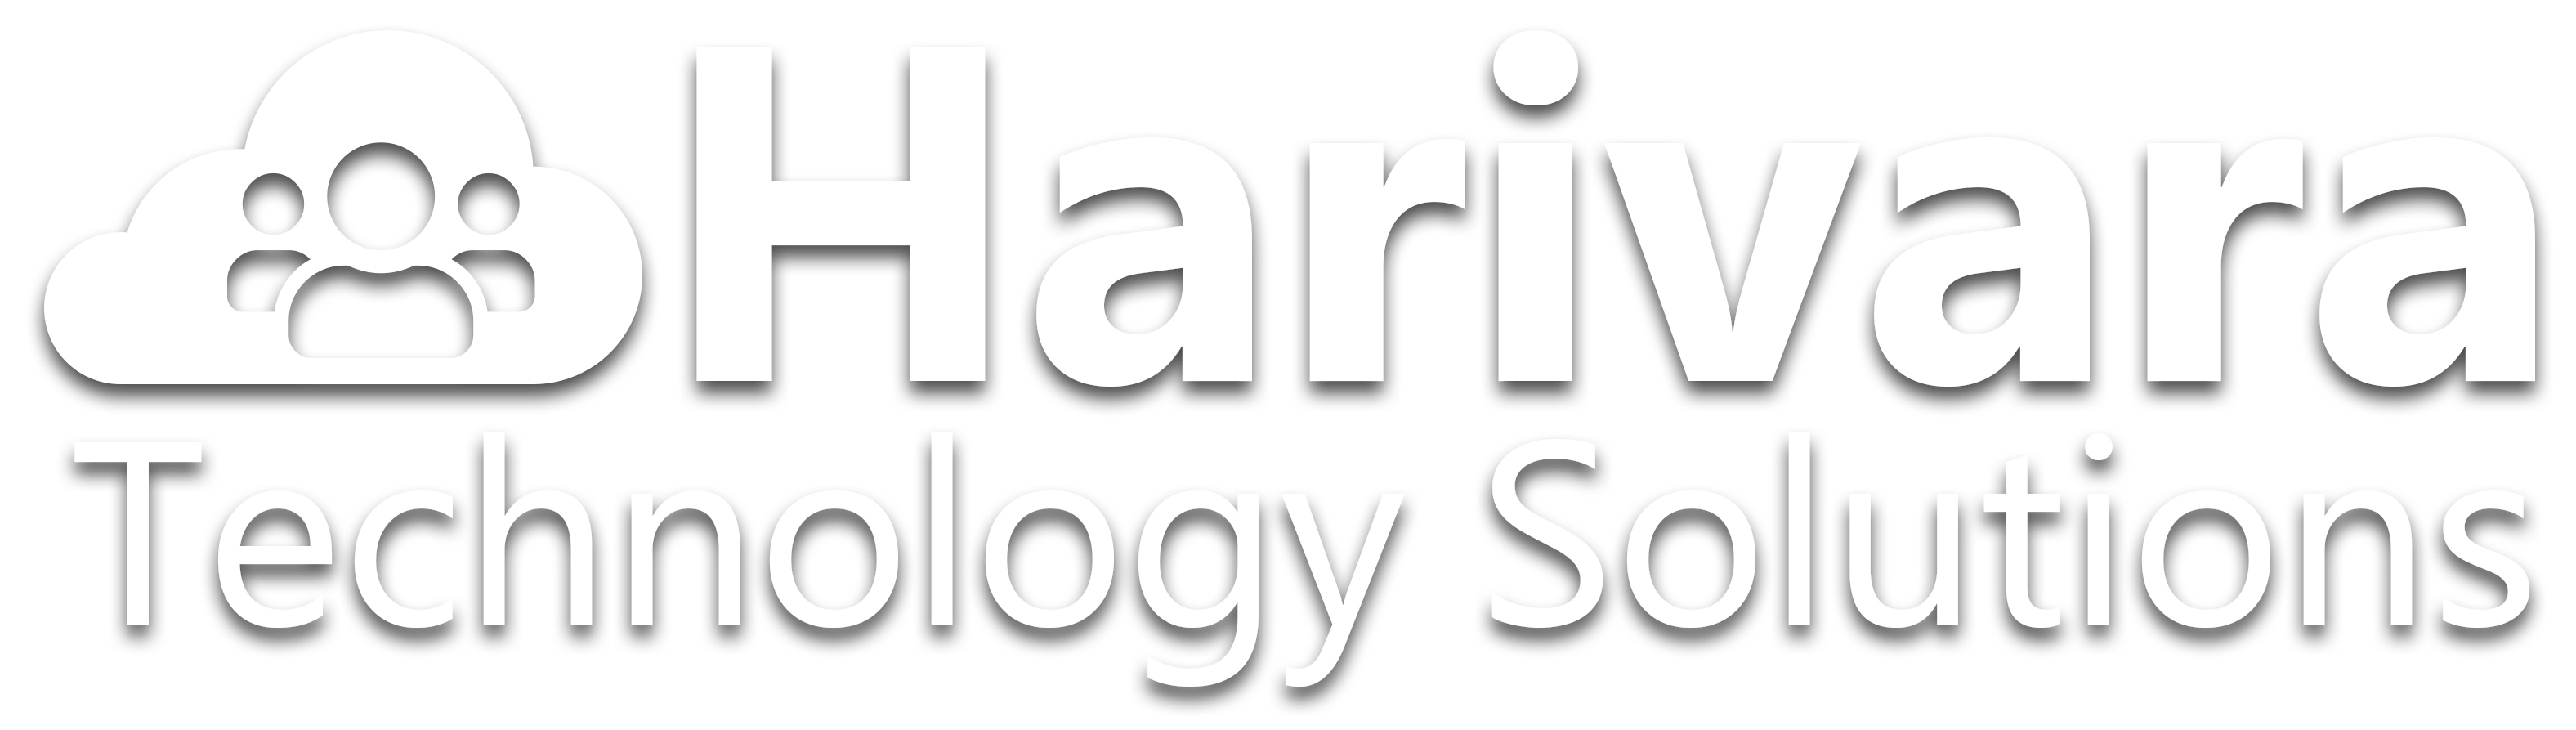 Harivara Technology Solutions